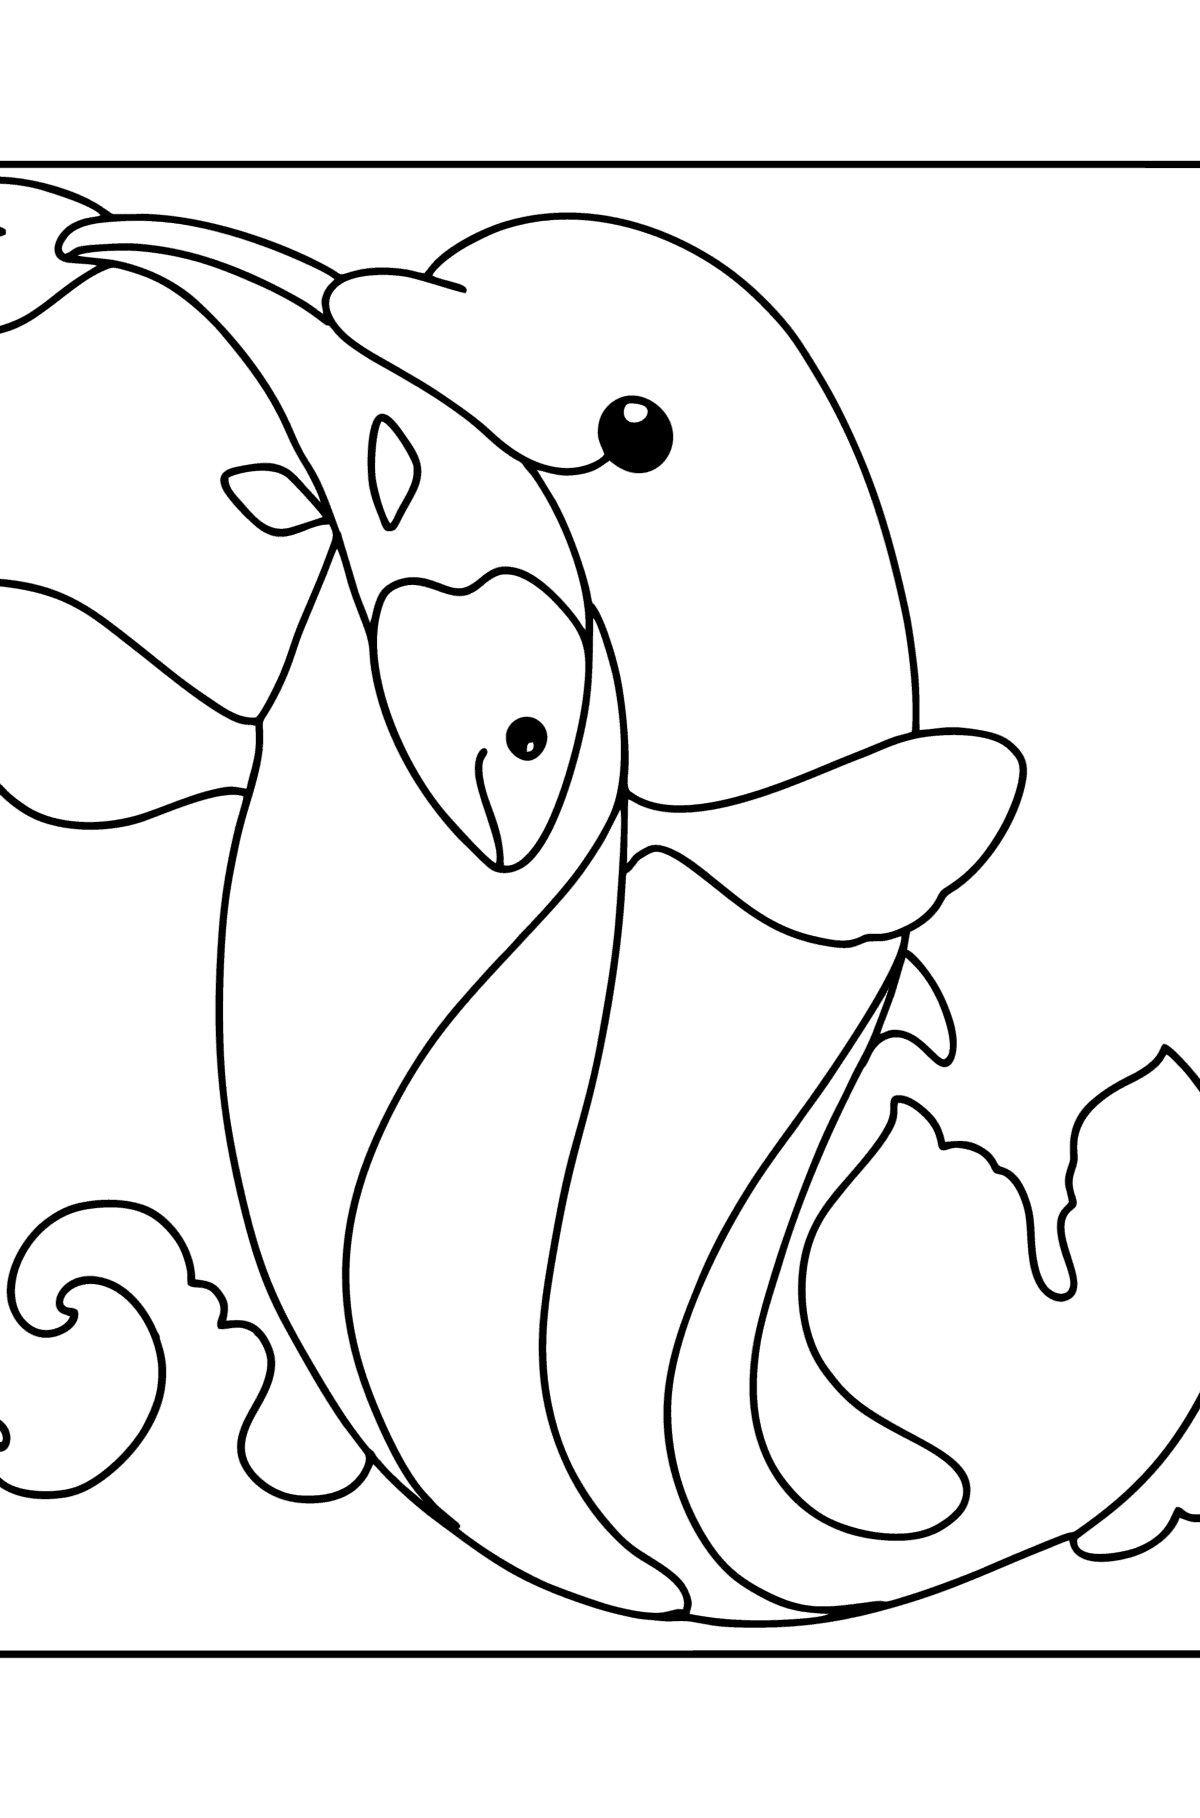 Раскраска Дельфин озорной - Картинки для Детей